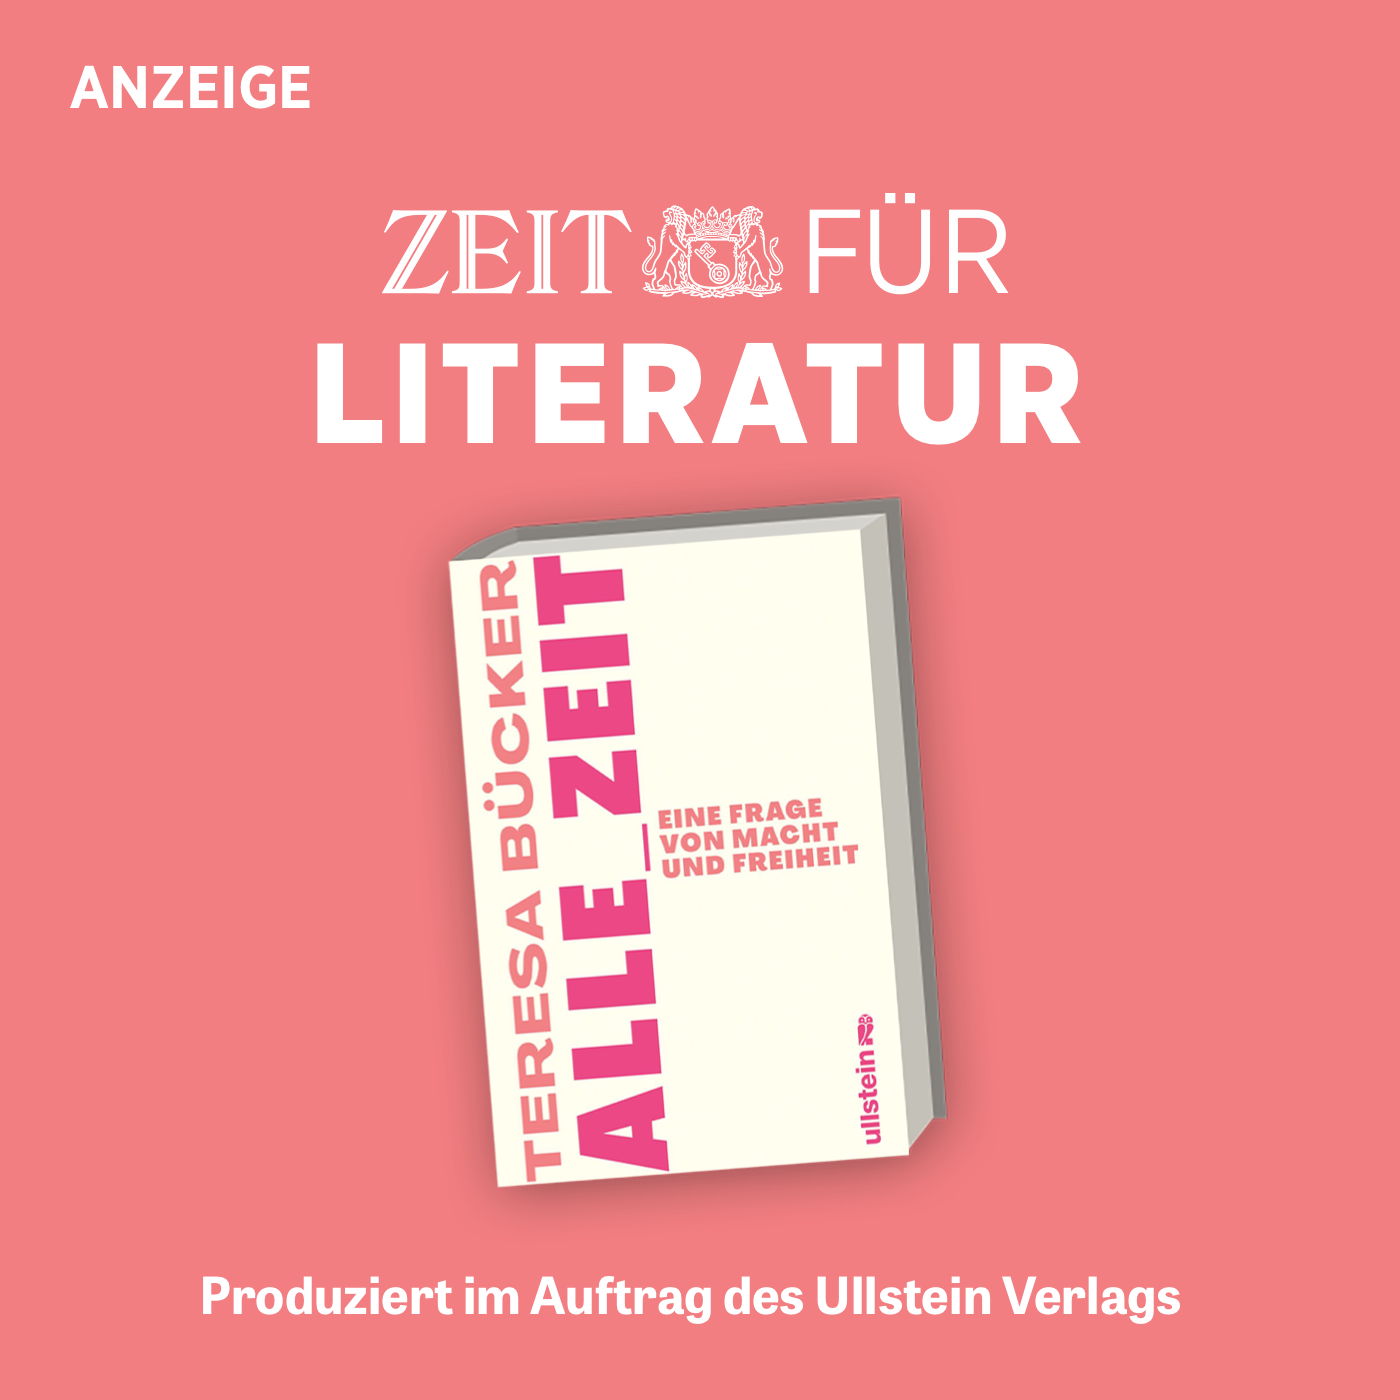 ZEIT für Literatur mit Teresa Bücker